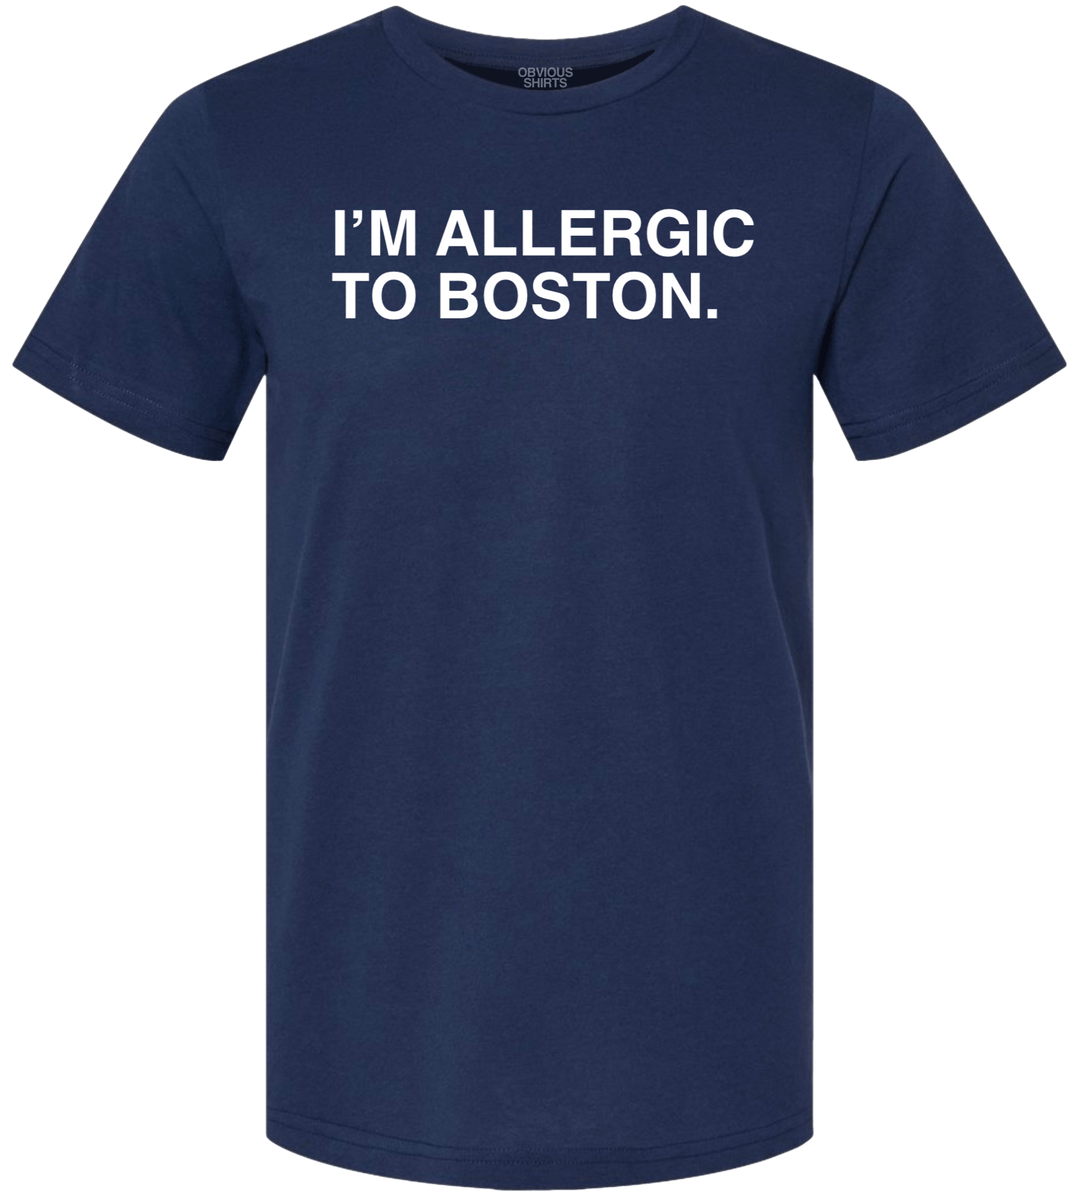 I'M ALLERGIC TO BOSTON. - OBVIOUS SHIRTS